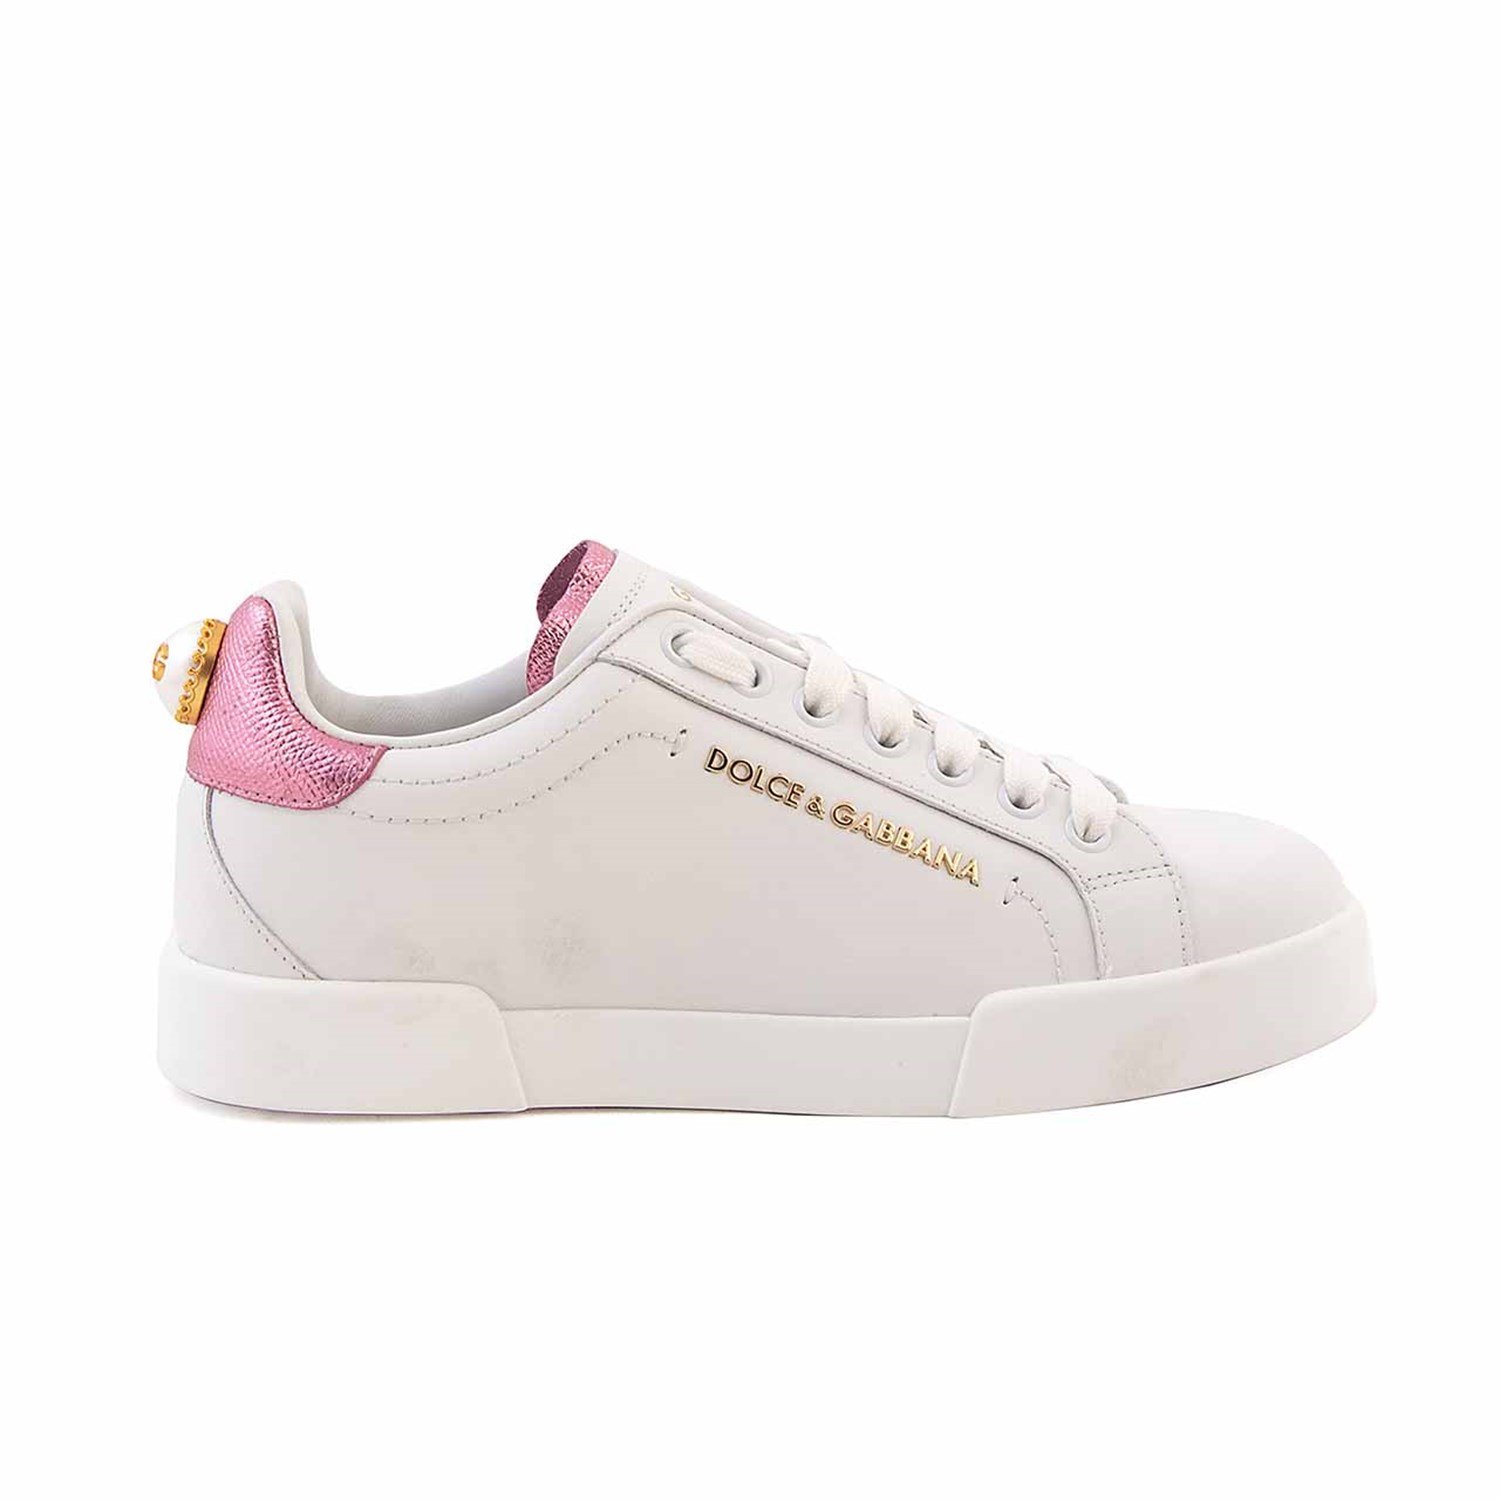 Dolce Gabbana Women's Sports & Sneakers